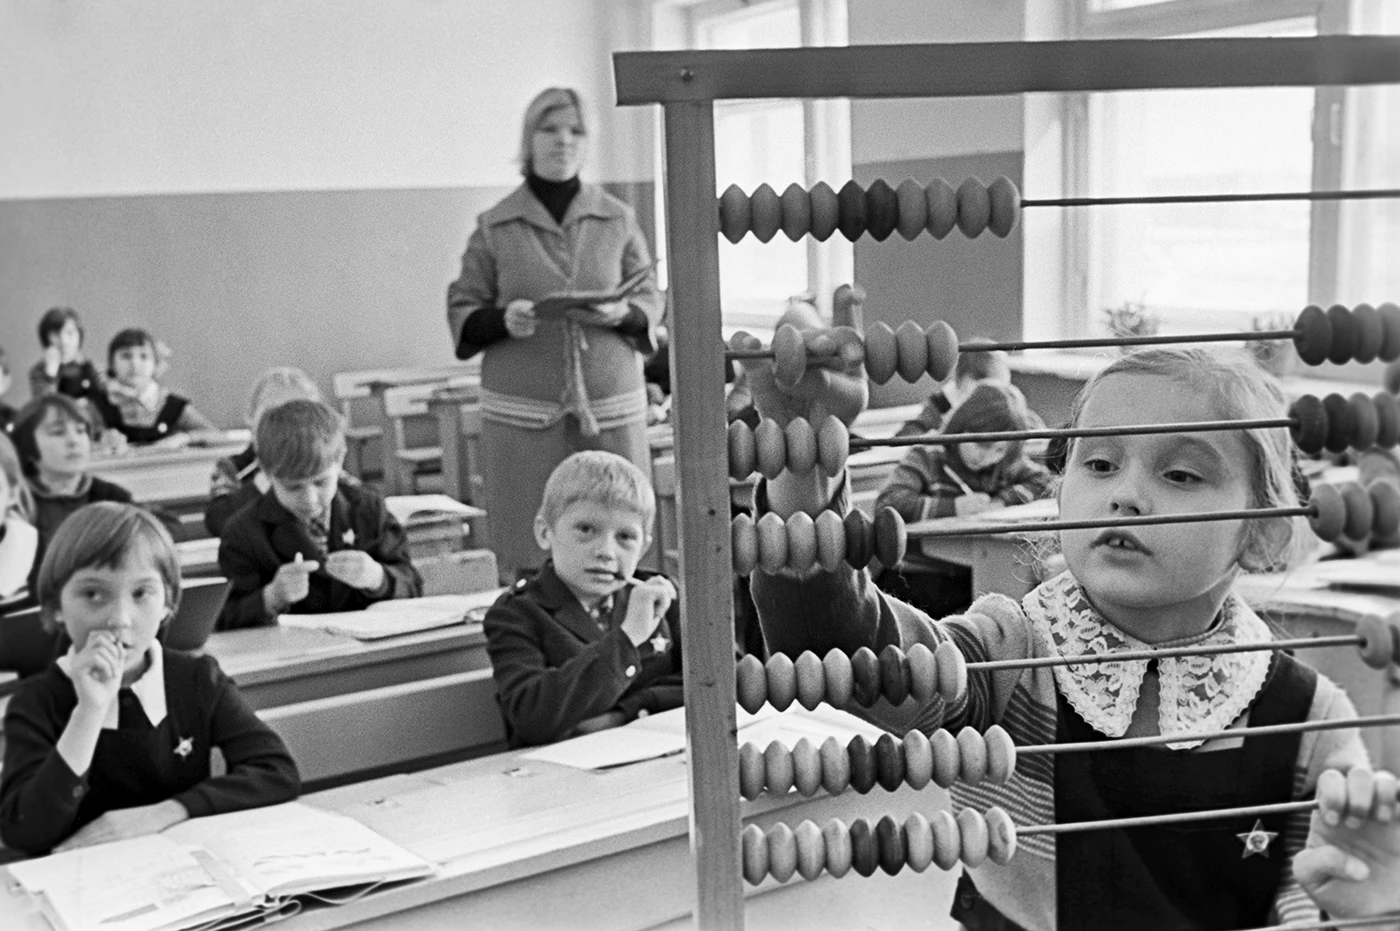 Занятия в первом классе сельской школы. Липецкая область, СССР, 12 марта 1979 года